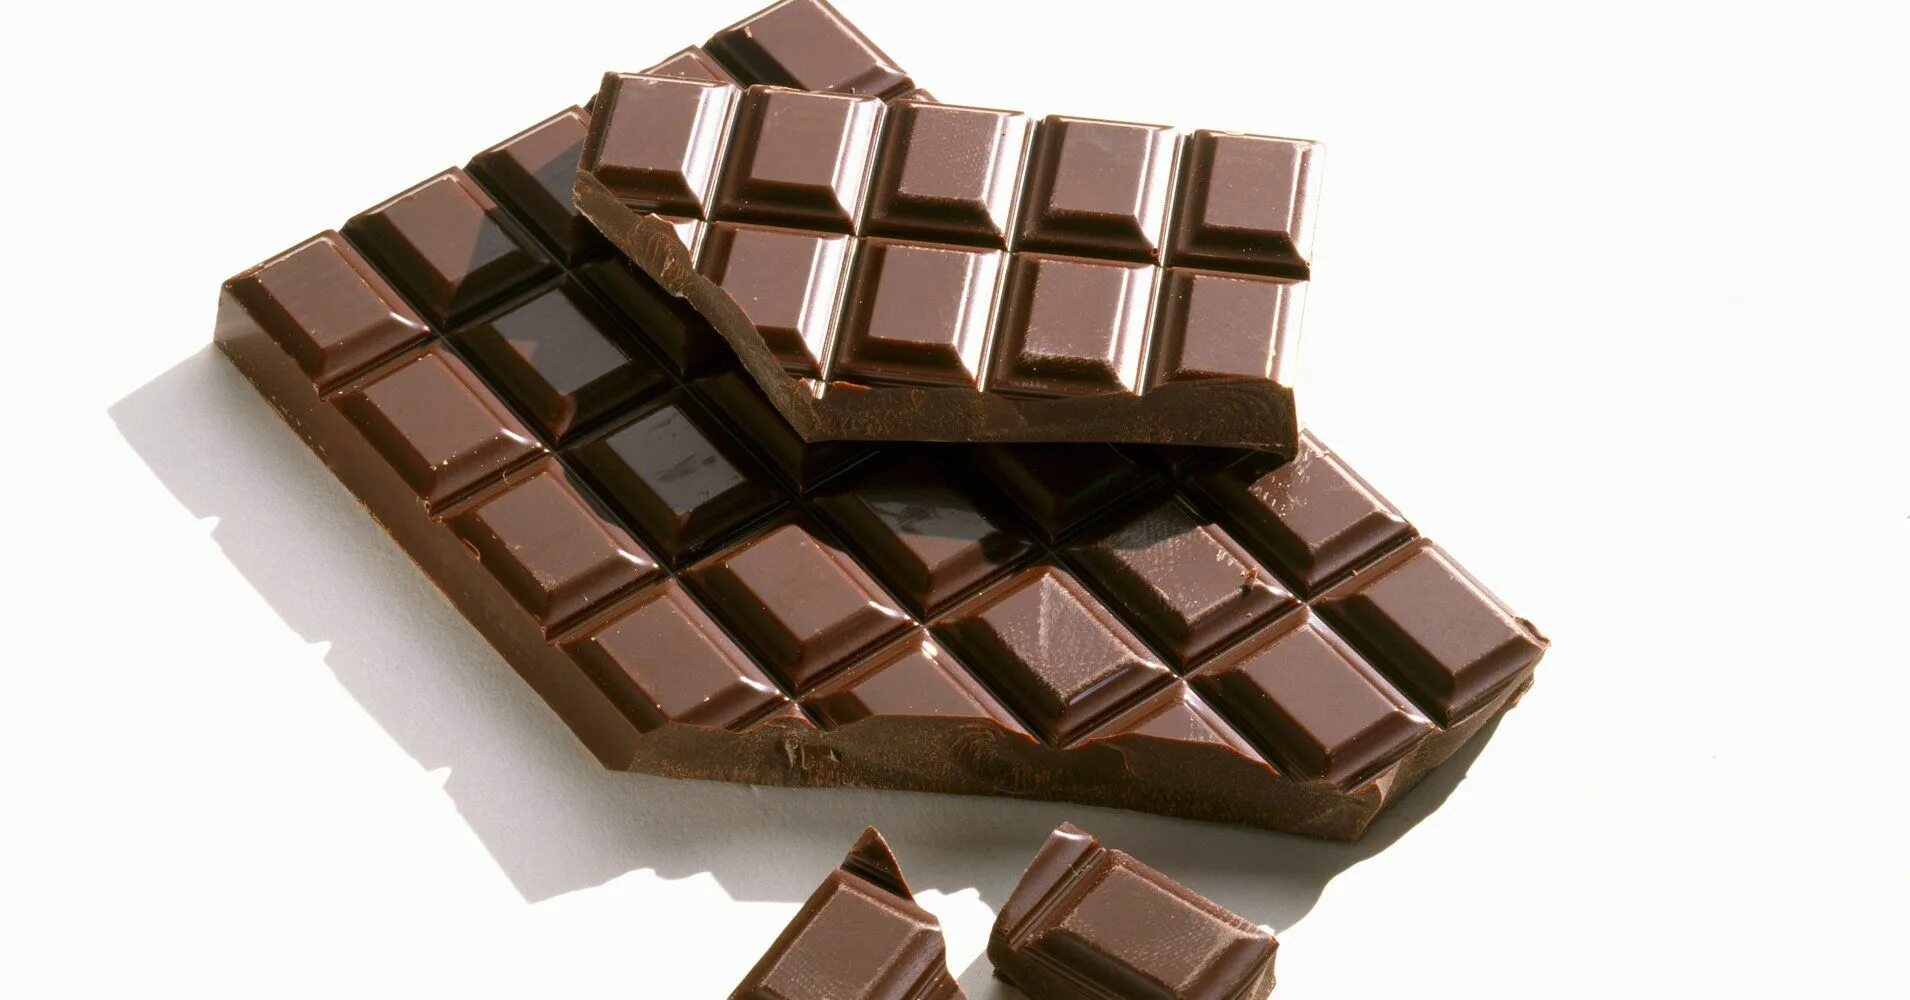 Bar of chocolate. Плитка шоколада. Аппетитная плитка шоколада. Маленькая плиточка шоколада. Технические шоколадки.